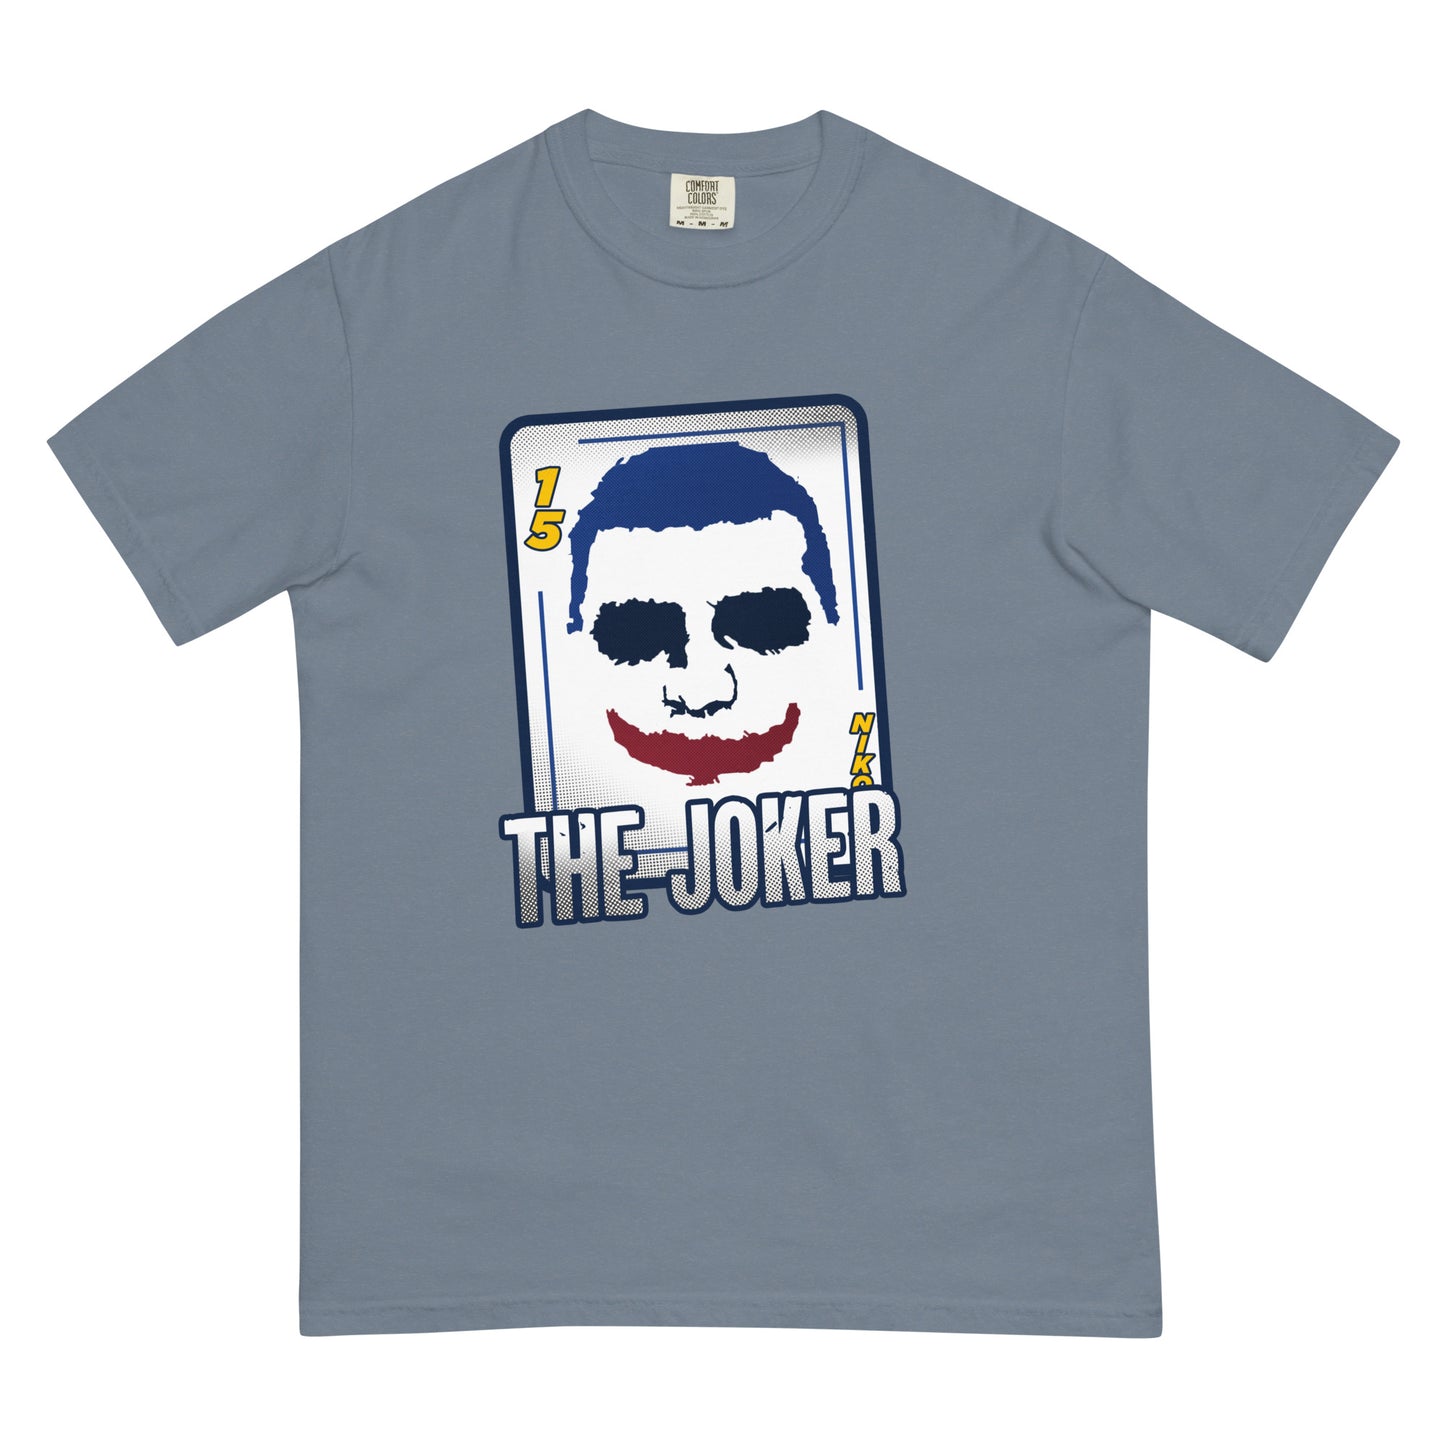 Mile High Joker NBA Finals Shirt